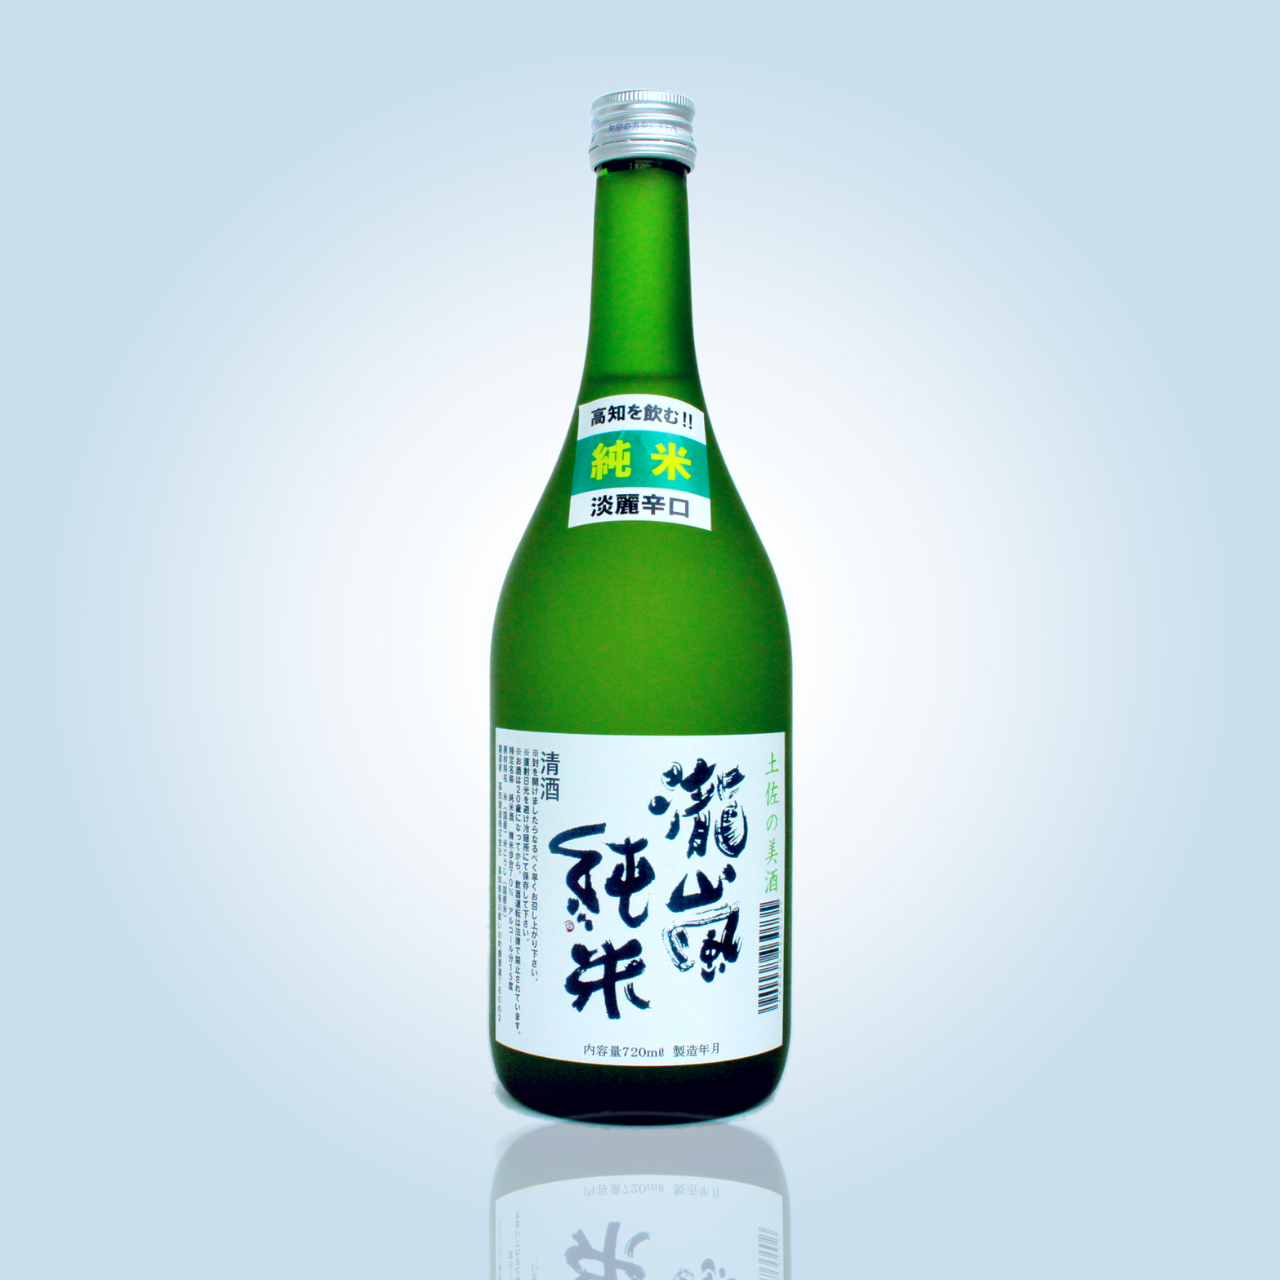 瀧嵐 純米酒 720ml